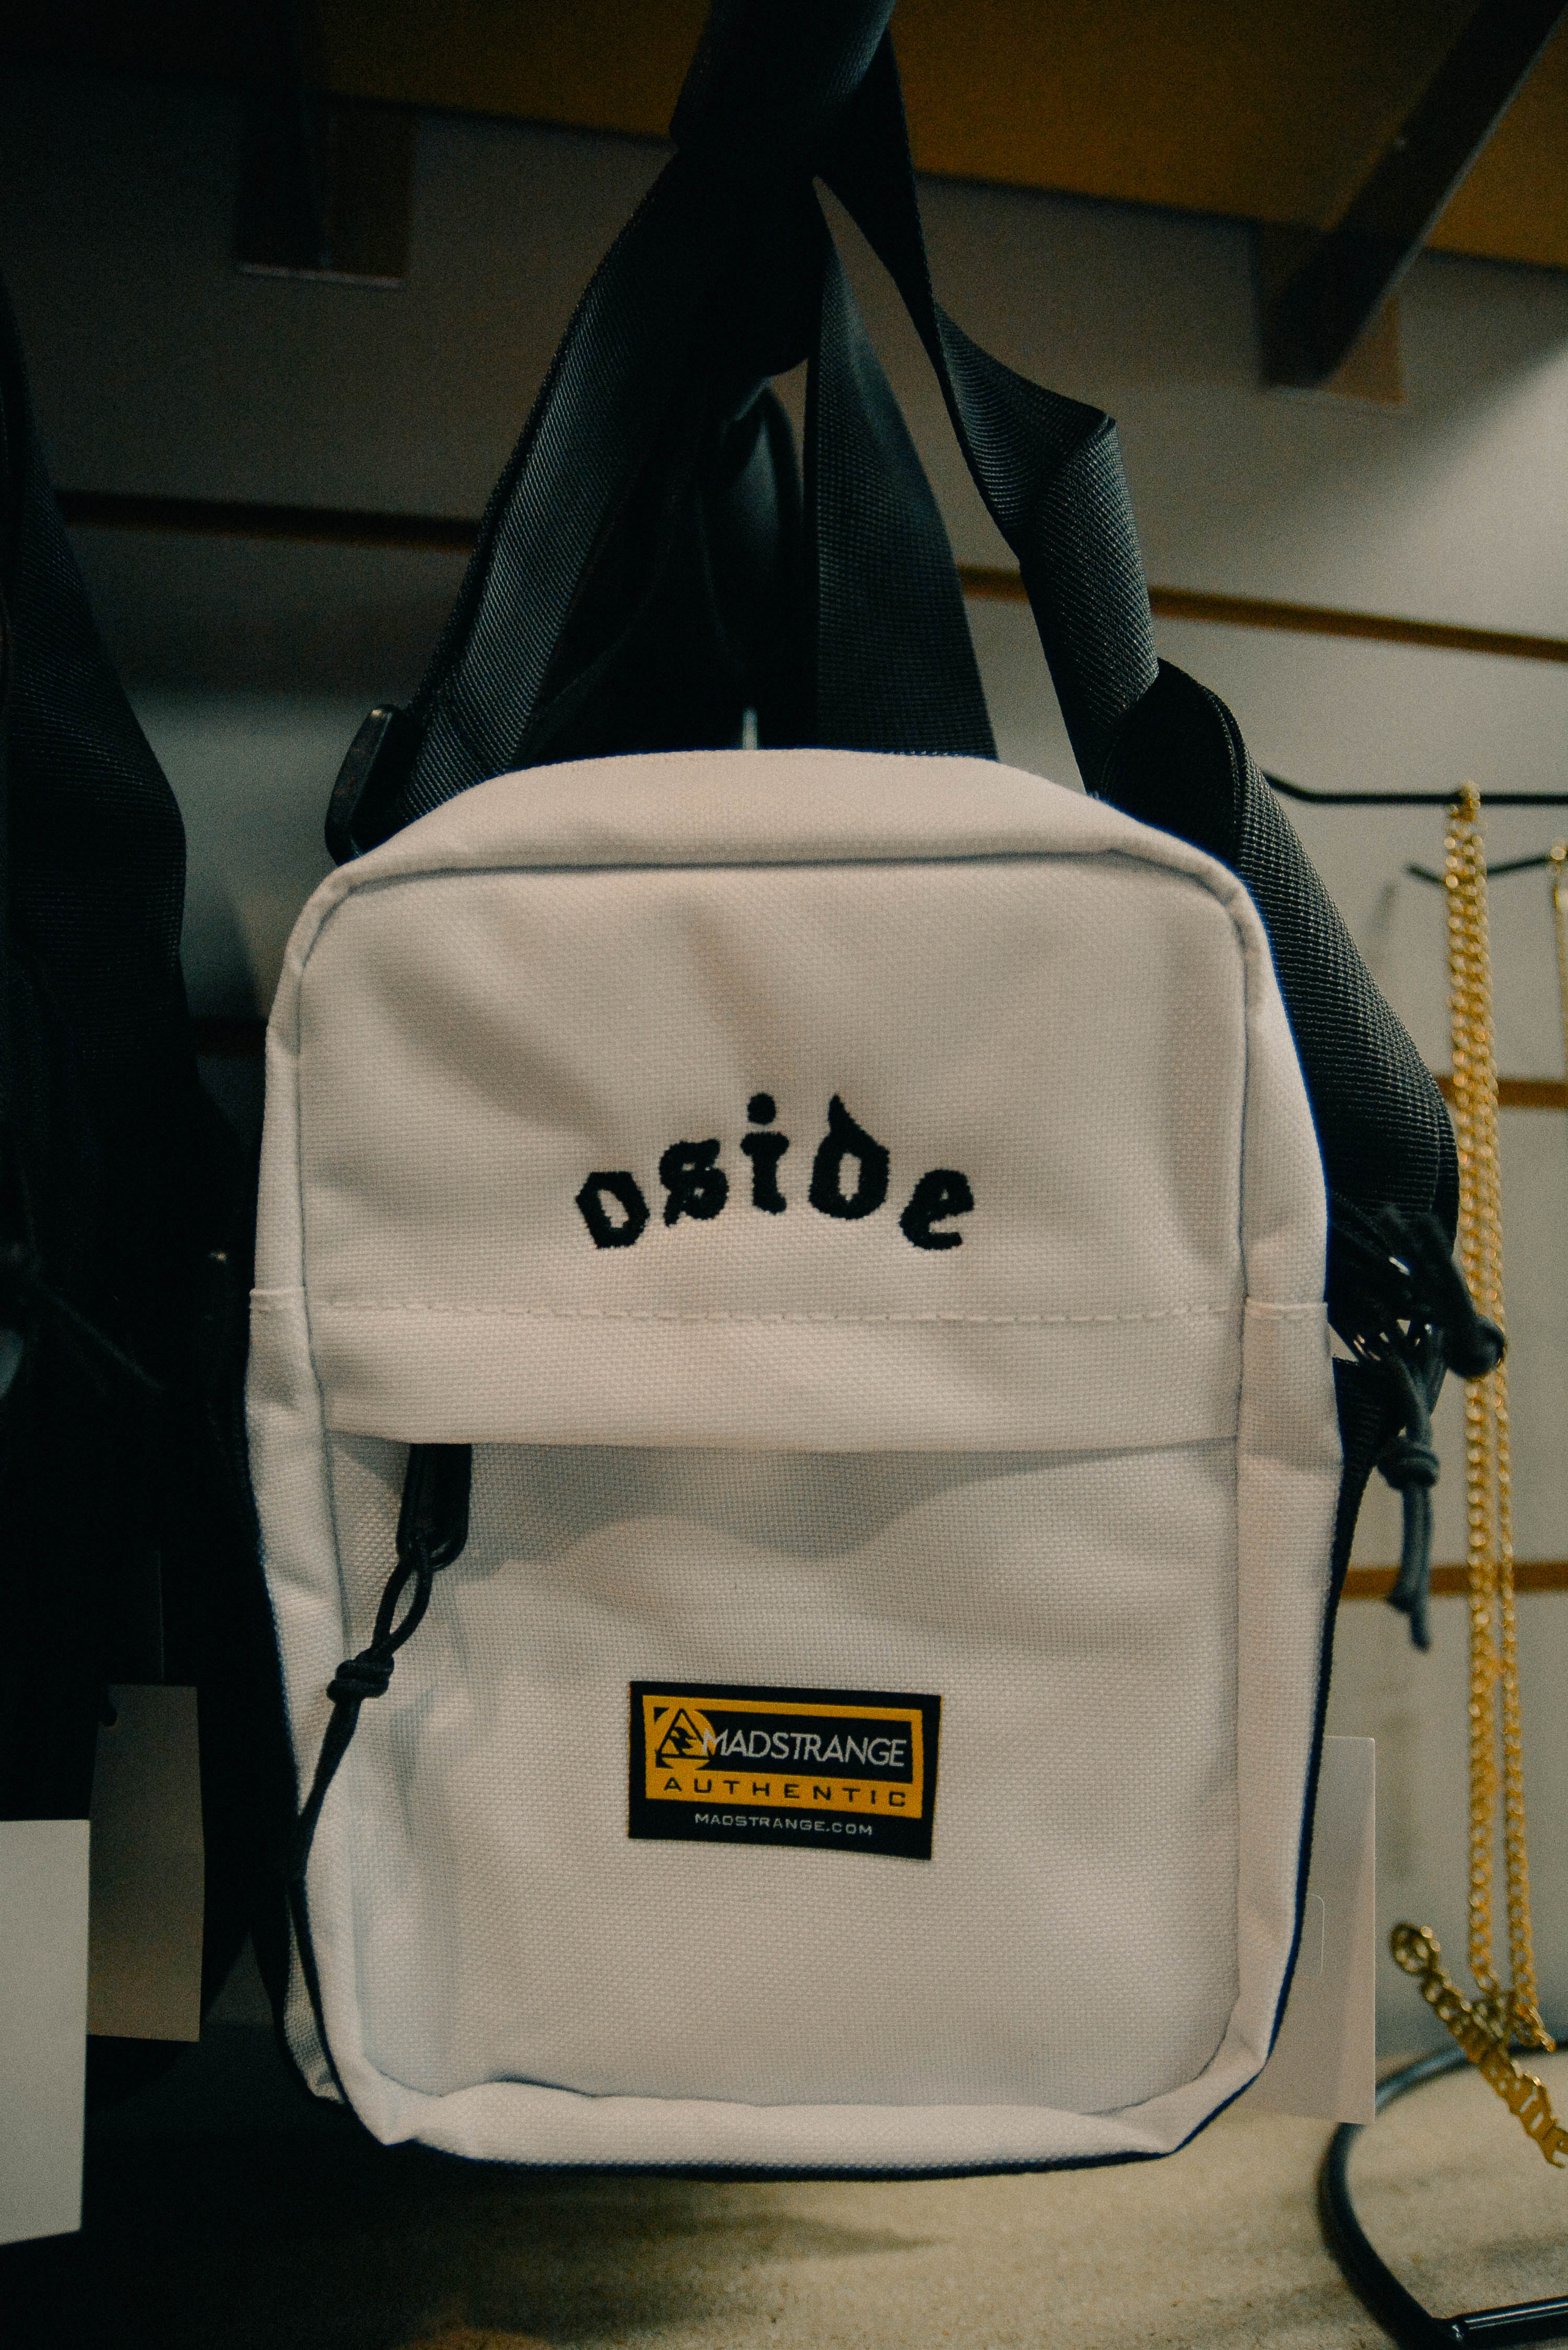 Oside Bag